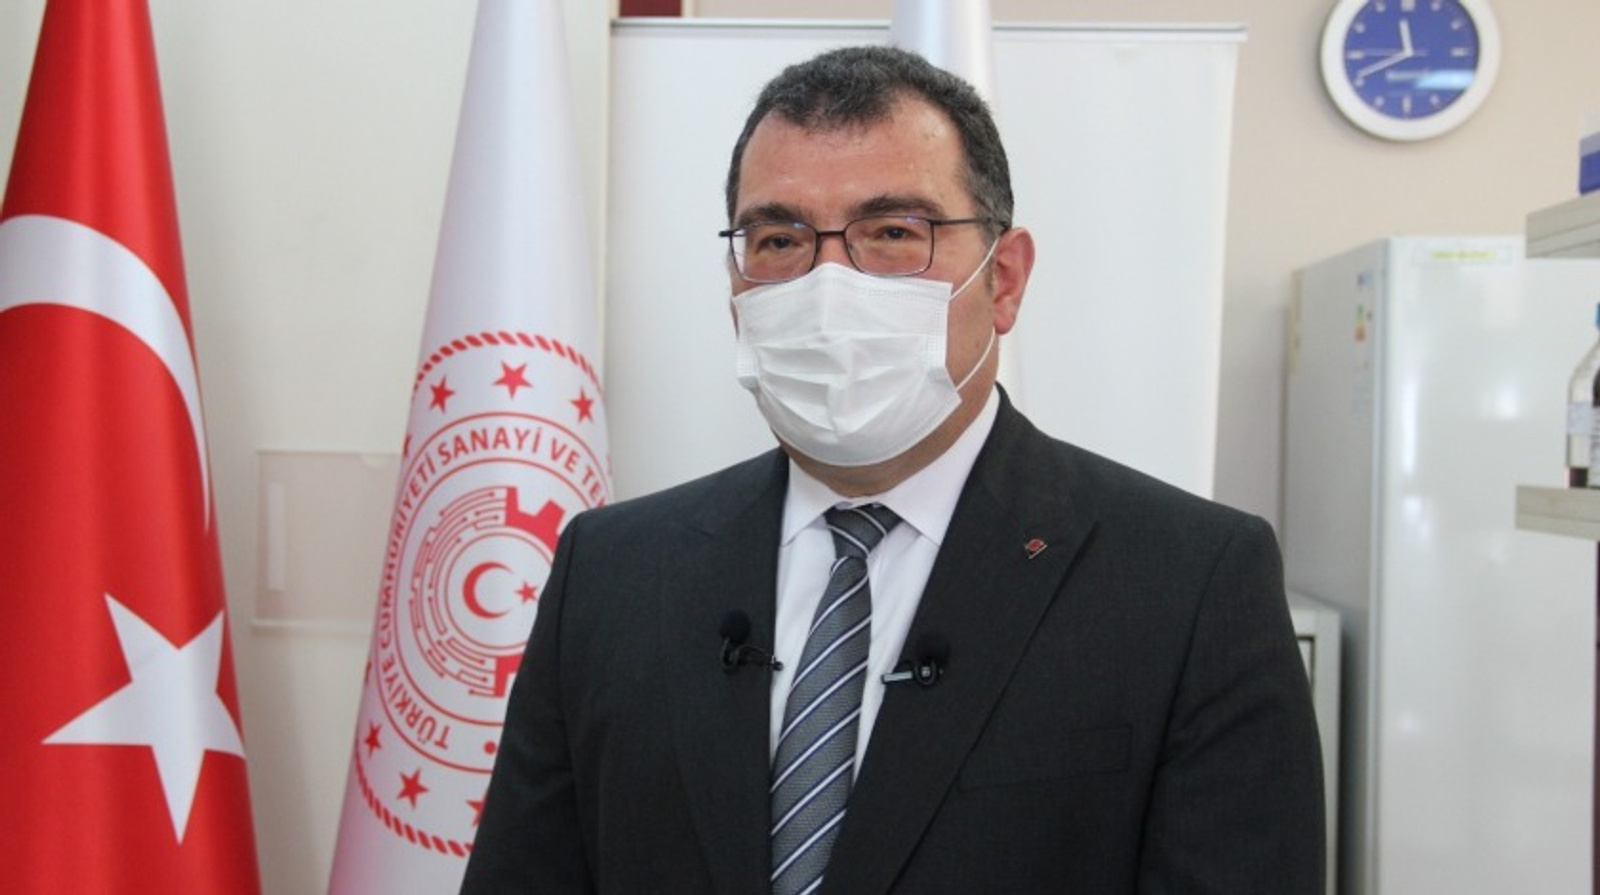  TÜBİTAK Başkanı Prof. Dr. Mandal: “Yerli Aşı Kasım-Aralık Ayında Kullanımda Olacak”